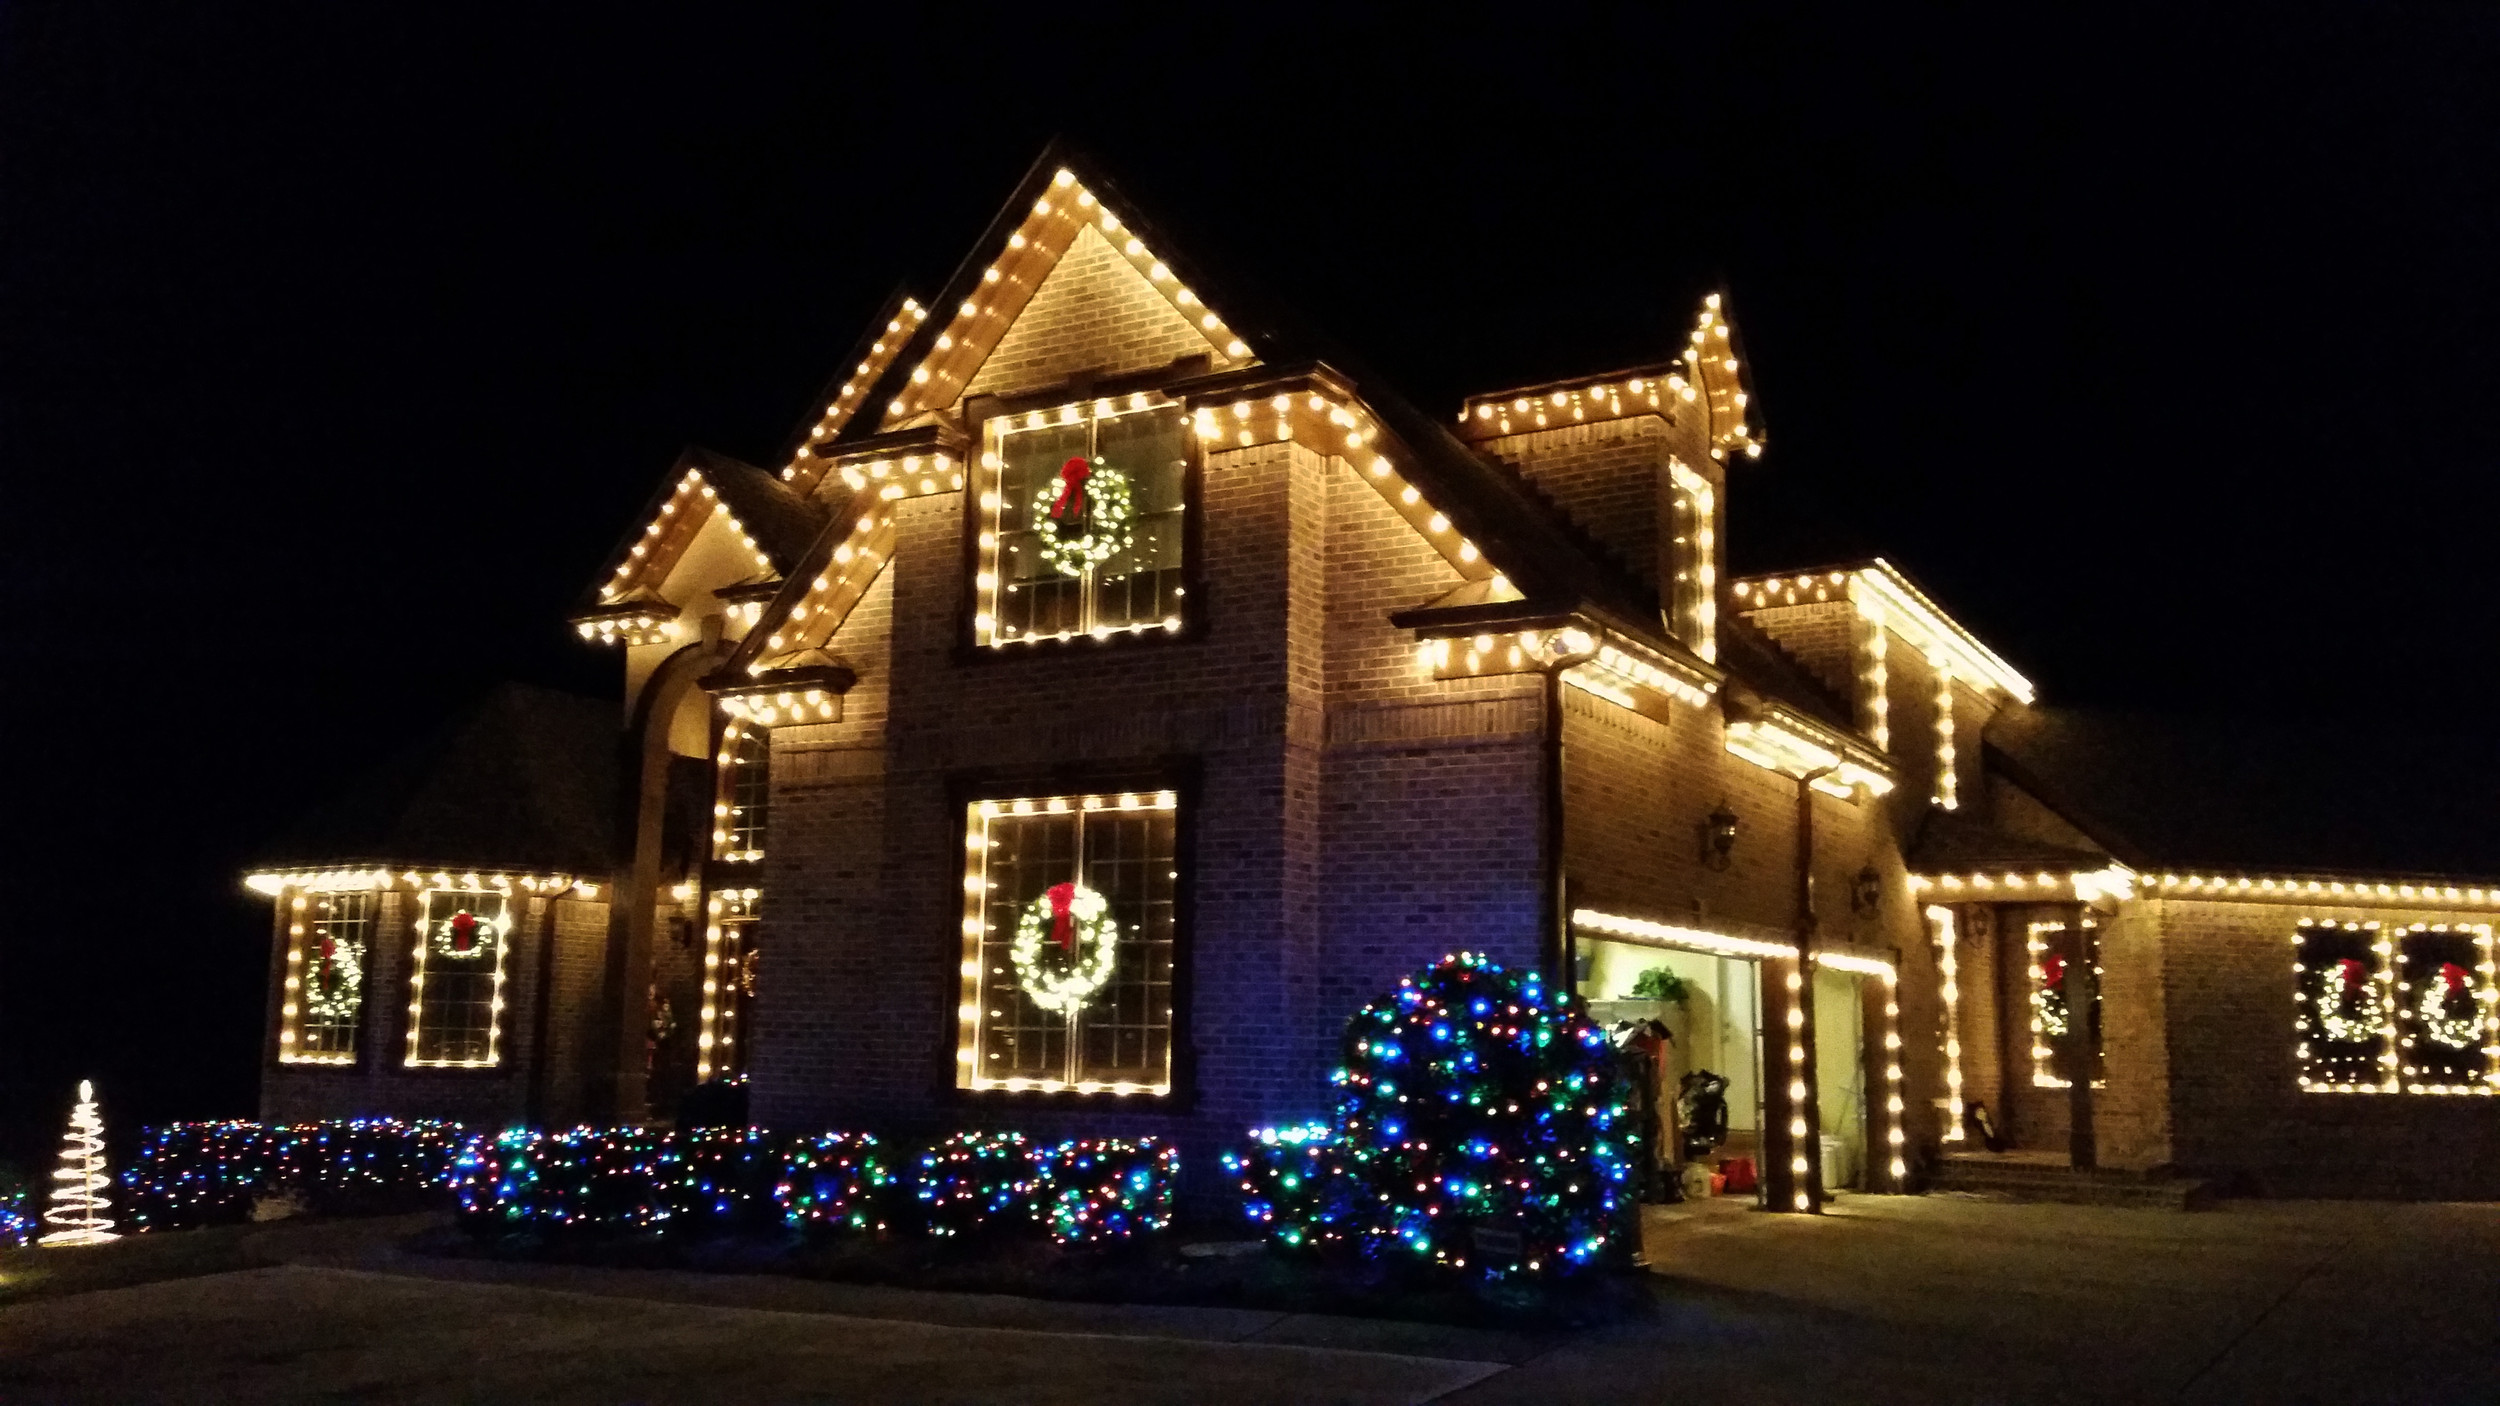 Christmas Light Installation in Dallas